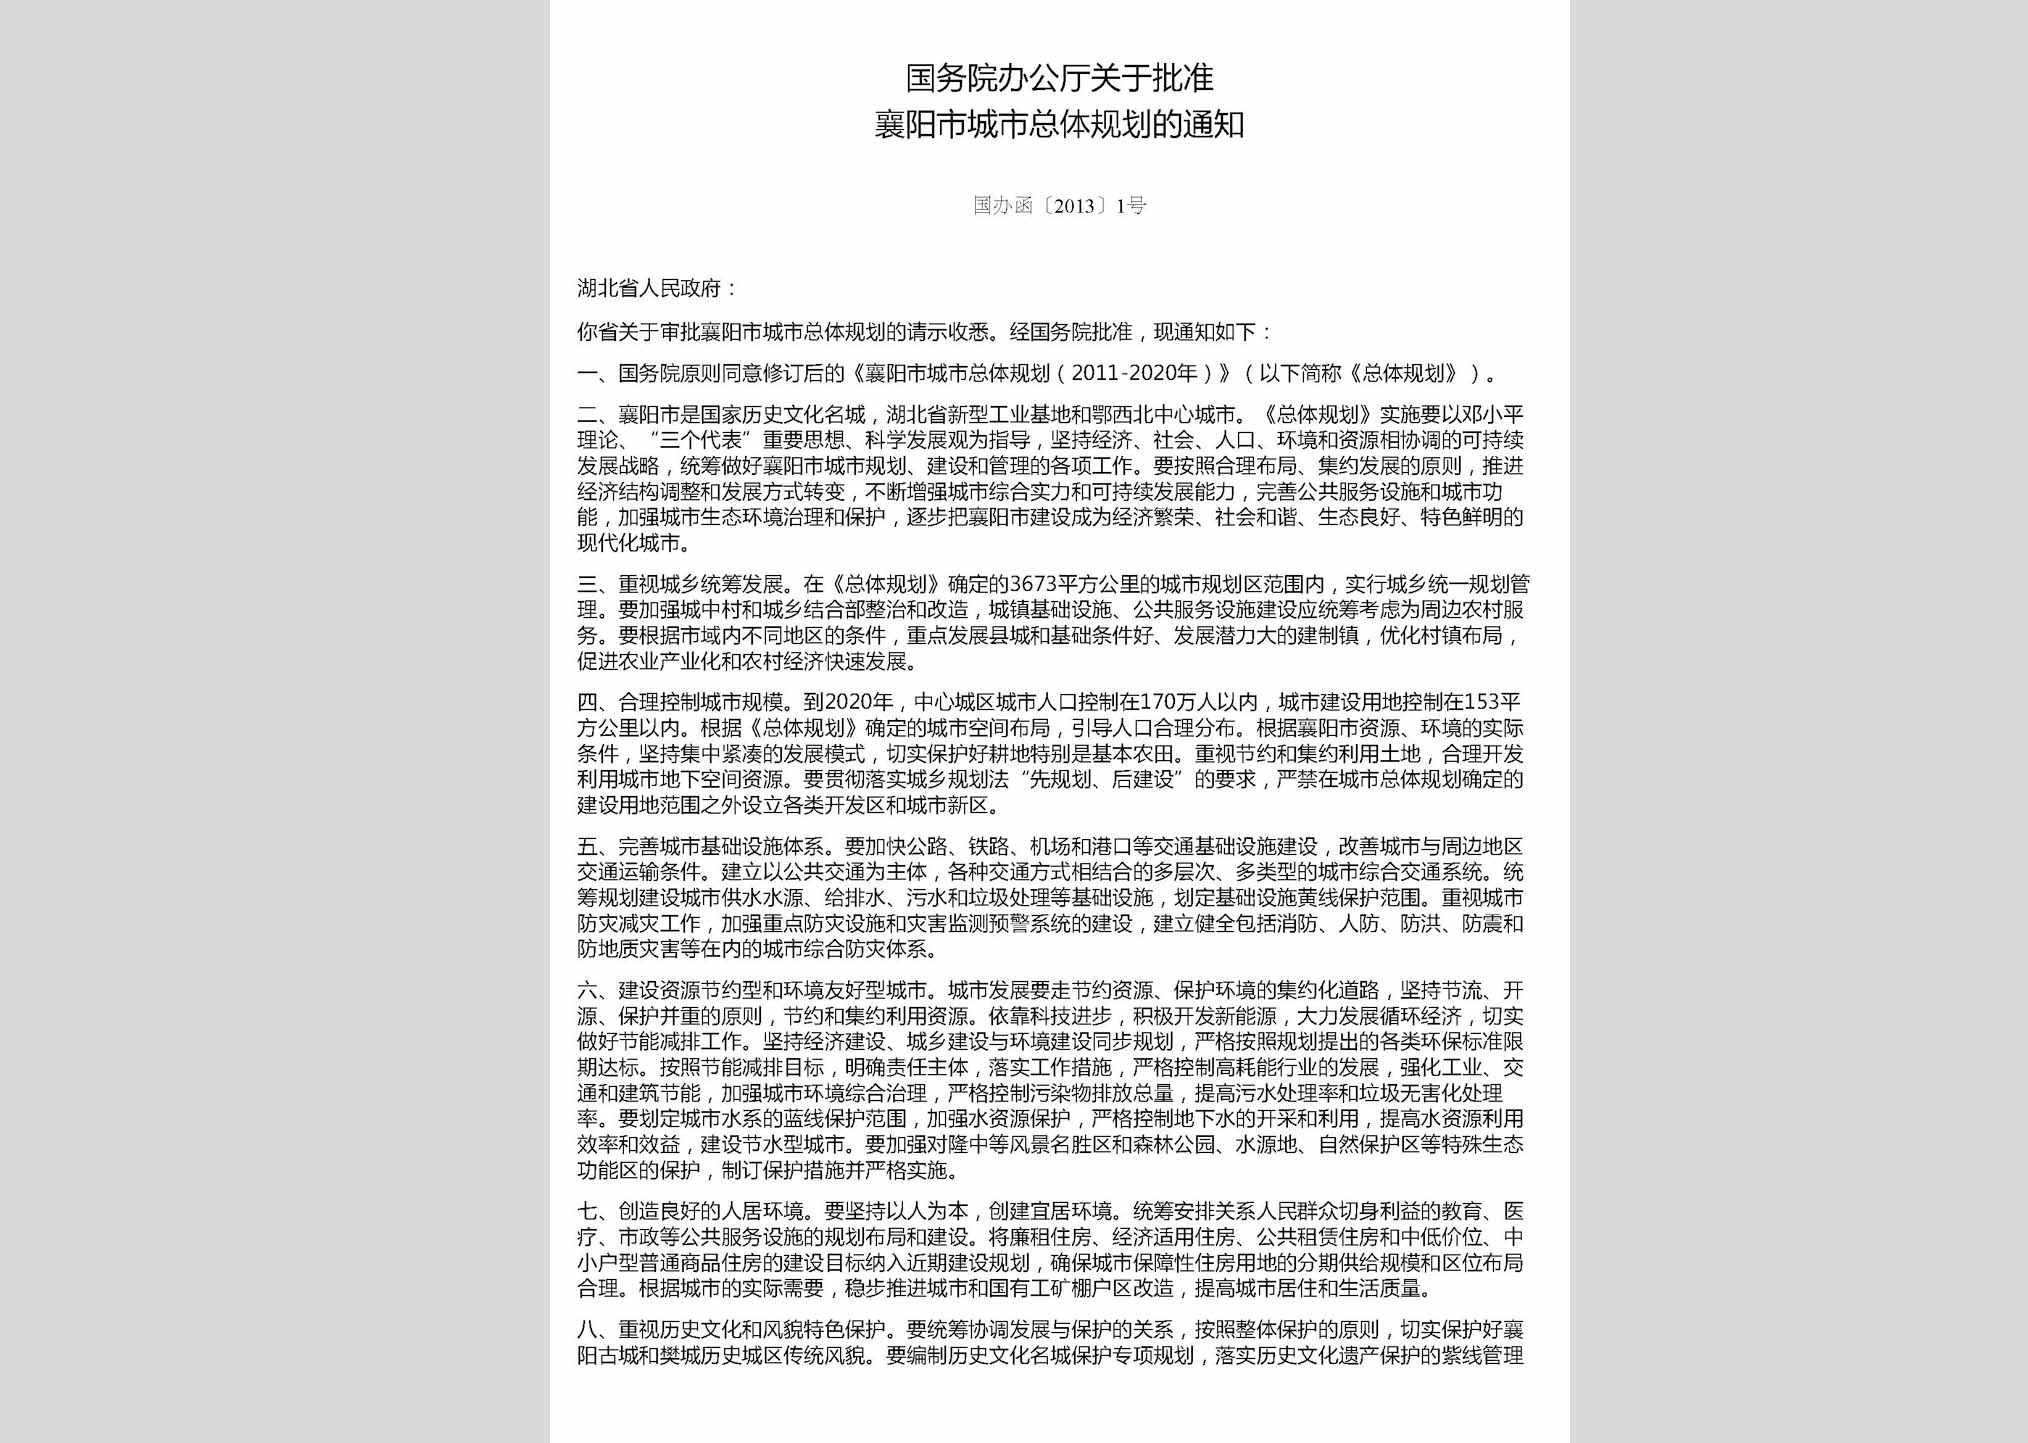 国办函[2013]1号：国务院办公厅关于批准襄阳市城市总体规划的通知